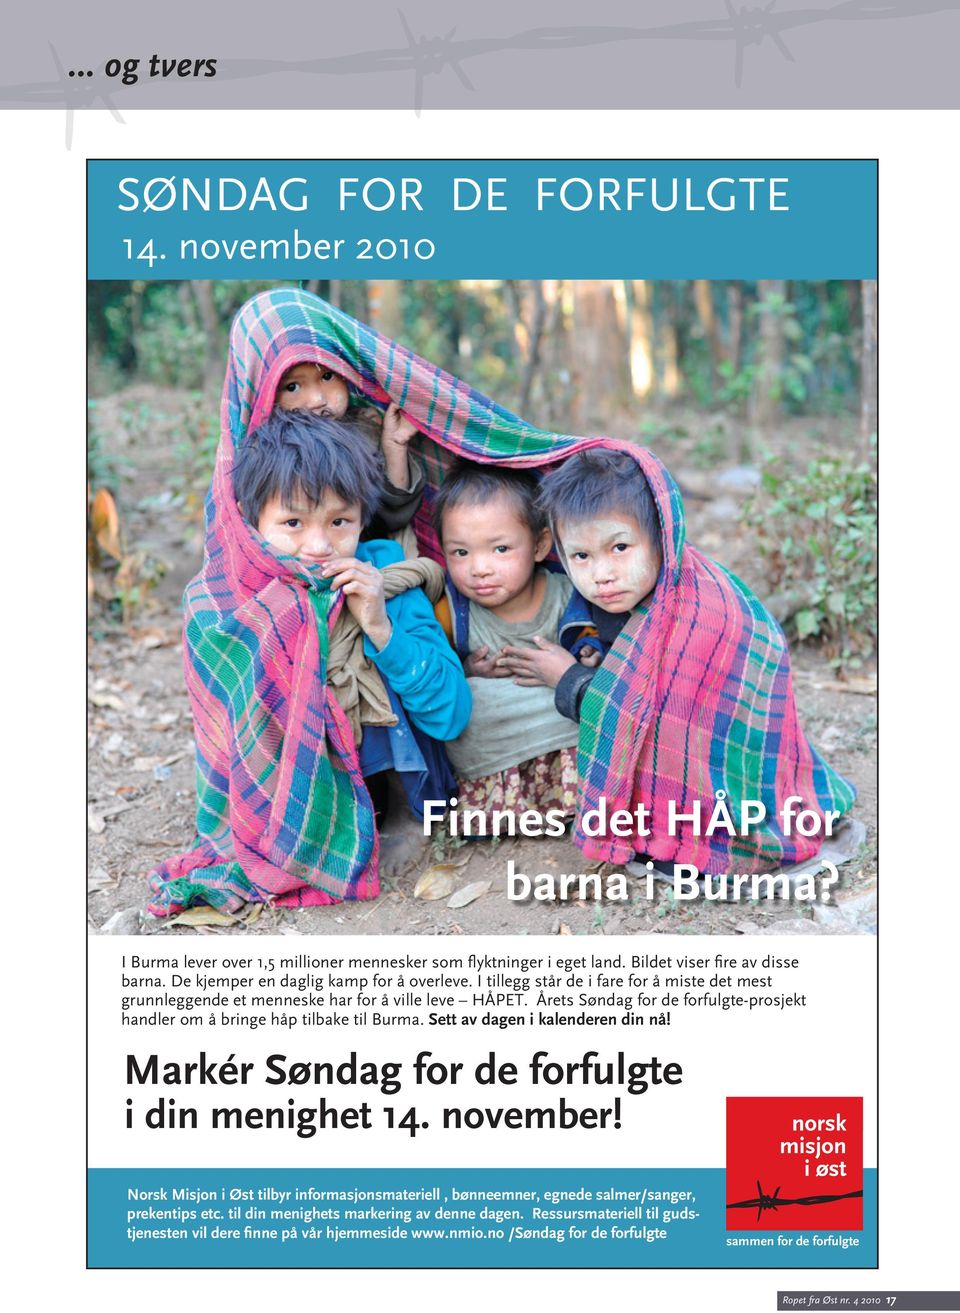 Årets Søndag for de forfulgte-prosjekt handler om å bringe håp tilbake til Burma. Sett av dagen i kalenderen din nå! Markér Søndag for de forfulgte i din menighet 14. november!